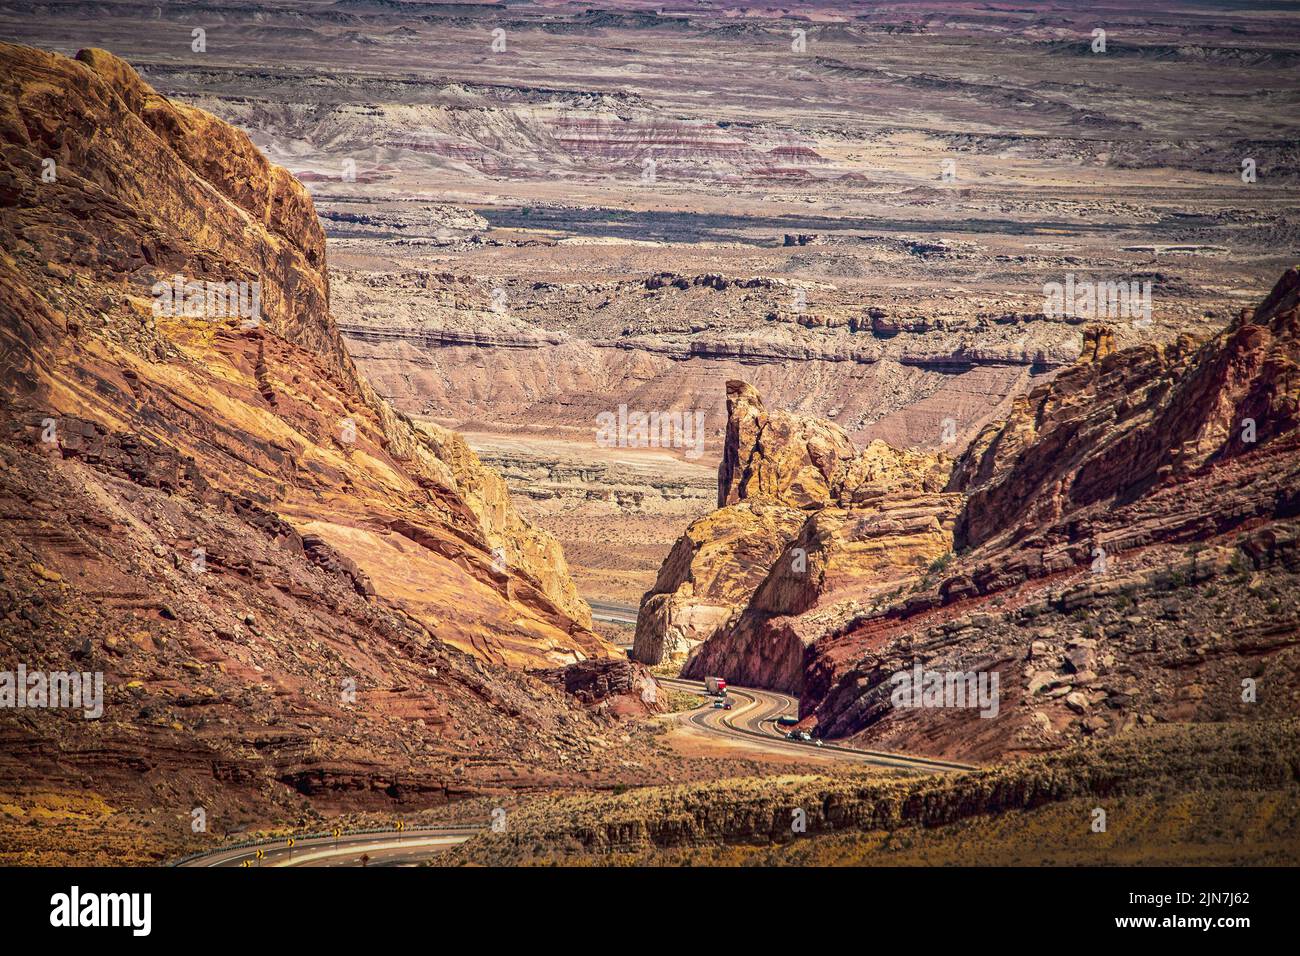 US 50 - Una autopista transcontinental en los EE.UU. Serpenteando a través del espectacular Cañón de San Rafel de Utah con canyonlands extendiéndose hasta donde el ojo puede Foto de stock